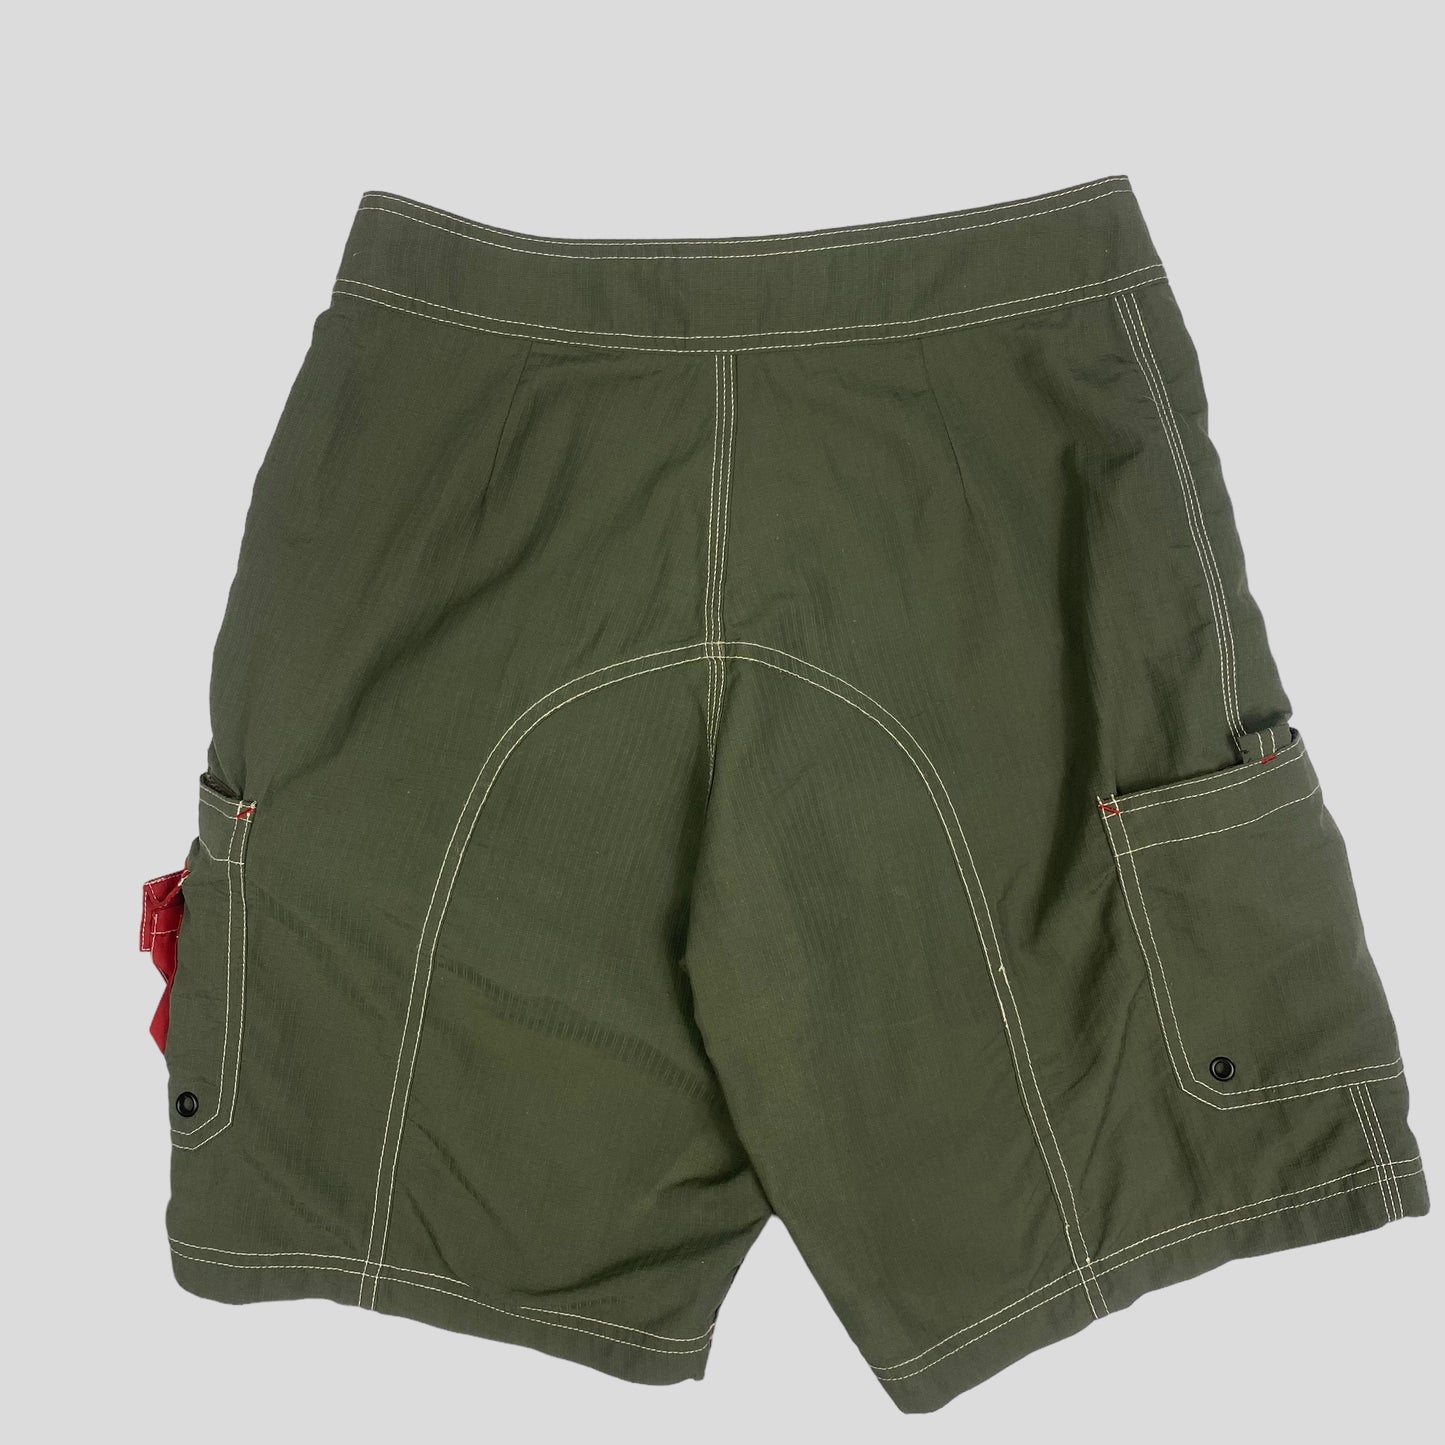 Stussy 2001 “Prada Sport” Rip Nylon Cargo Shorts - 30